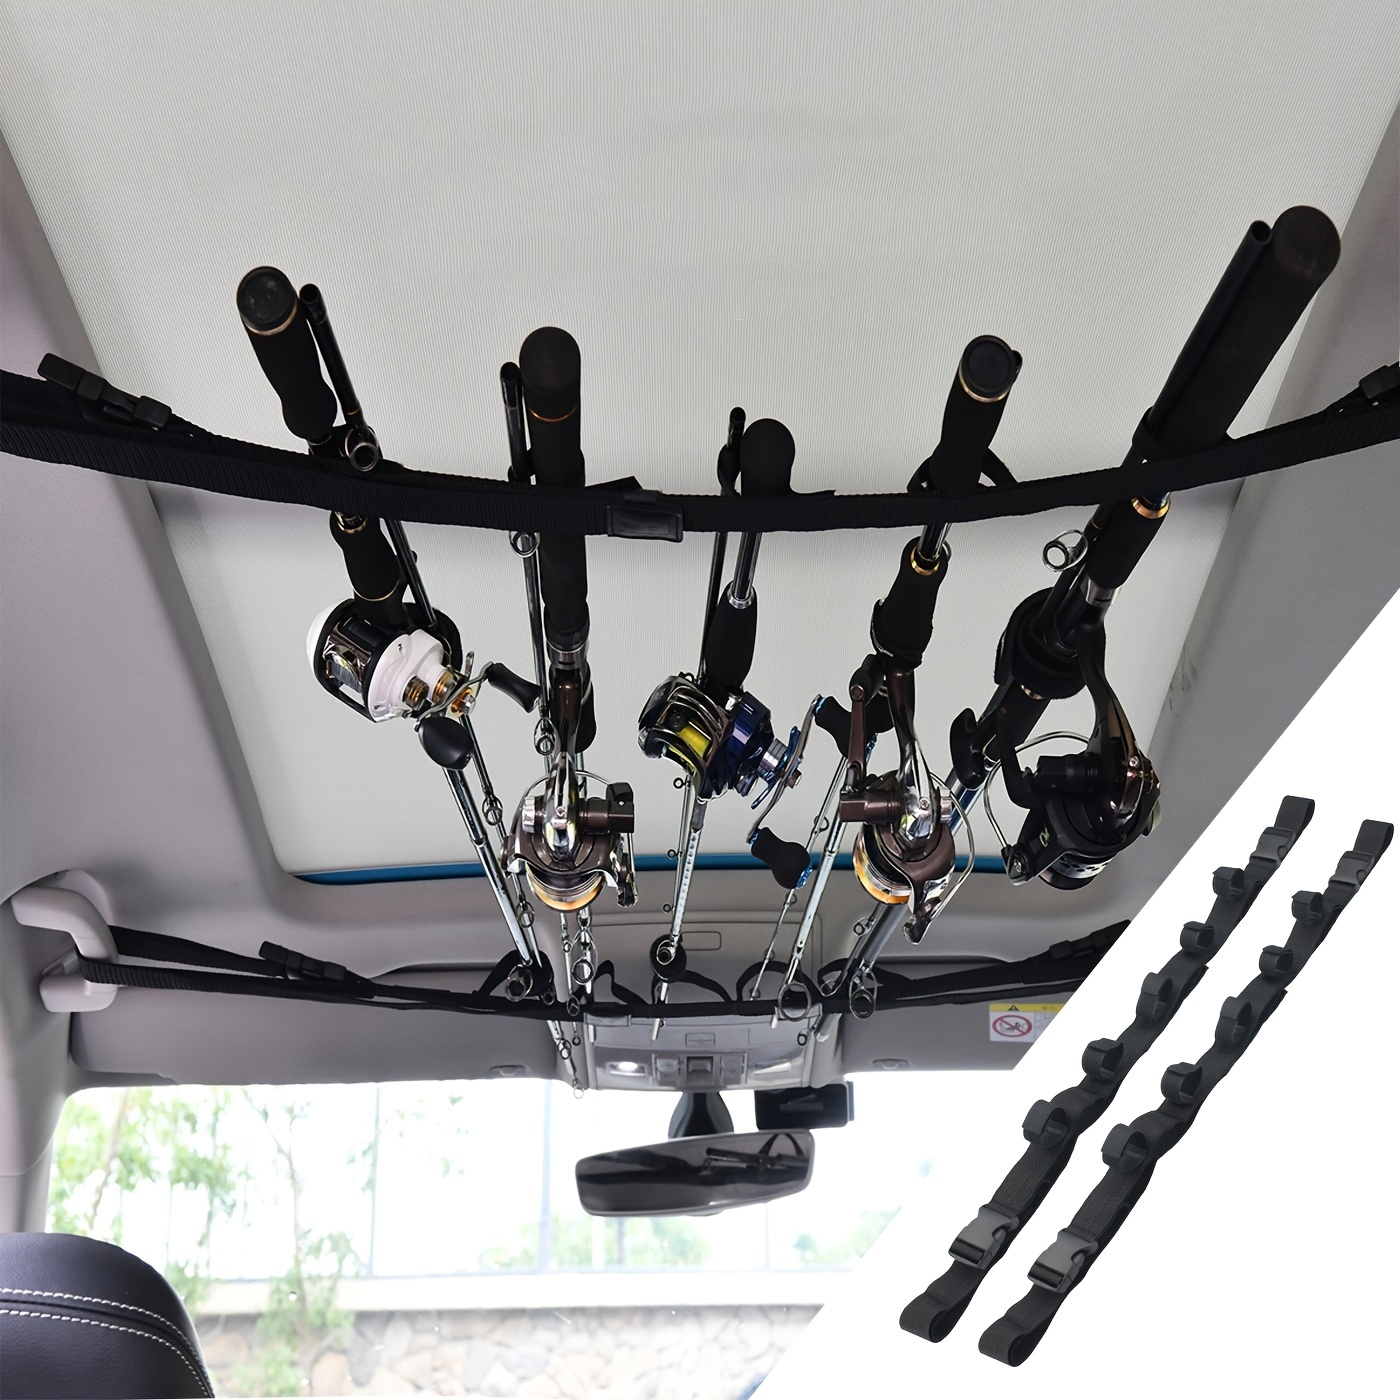 2pcs Fishing Pole Storage Rack Adjustable Car Backseat Fishing Rod